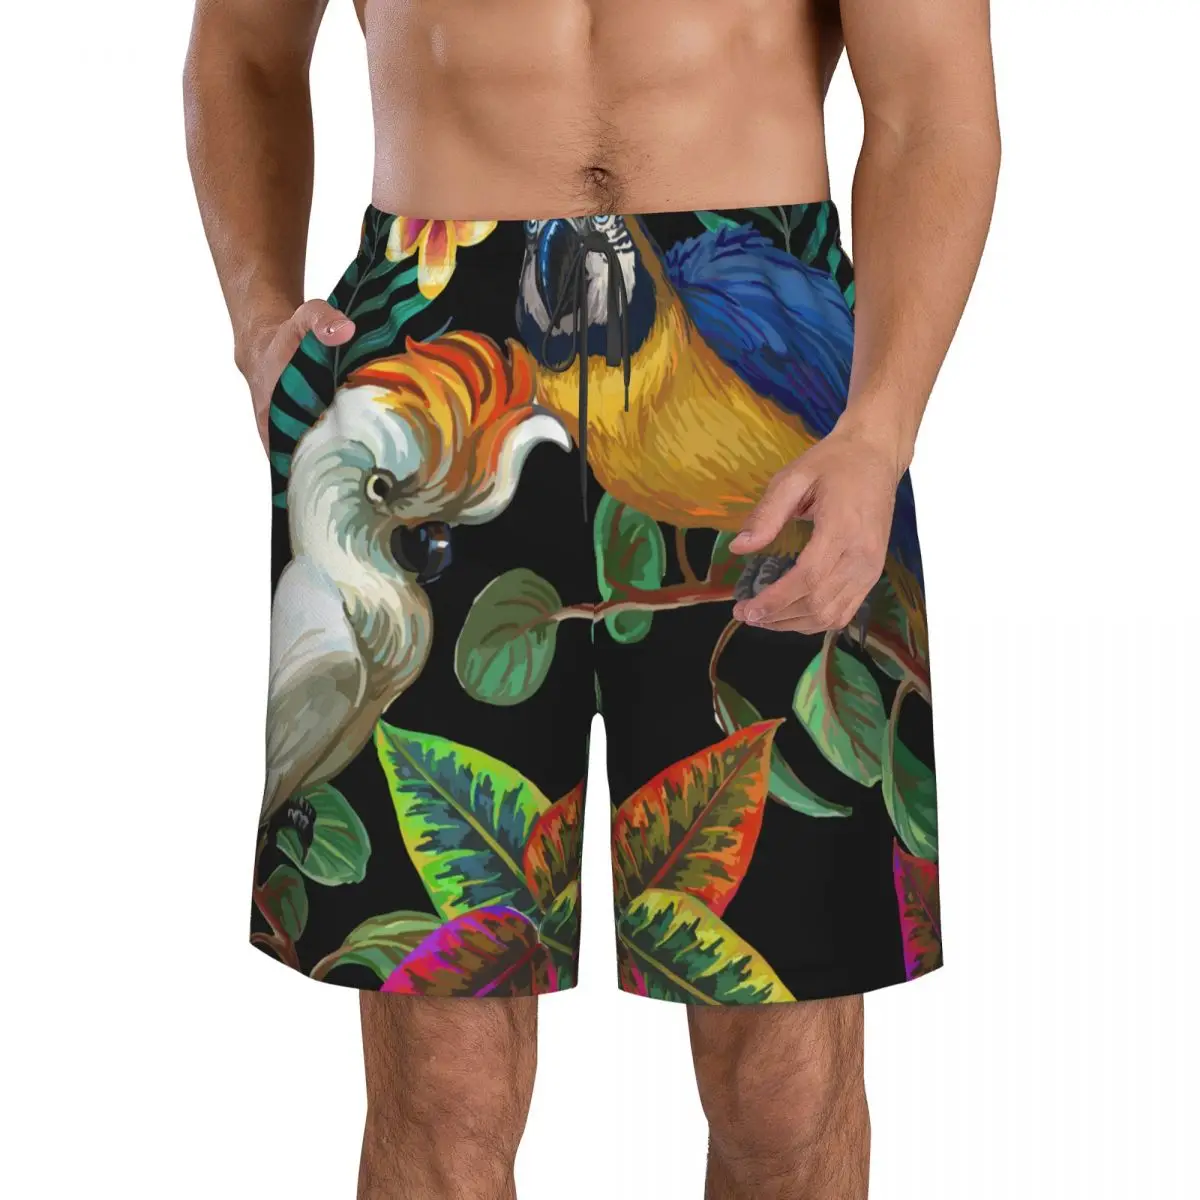 

Быстросохнущие шорты для плавания для мужчин, одежда для плавания, Мужской купальный костюм, плавки, летняя пляжная одежда для купания, тропические птицы и растения